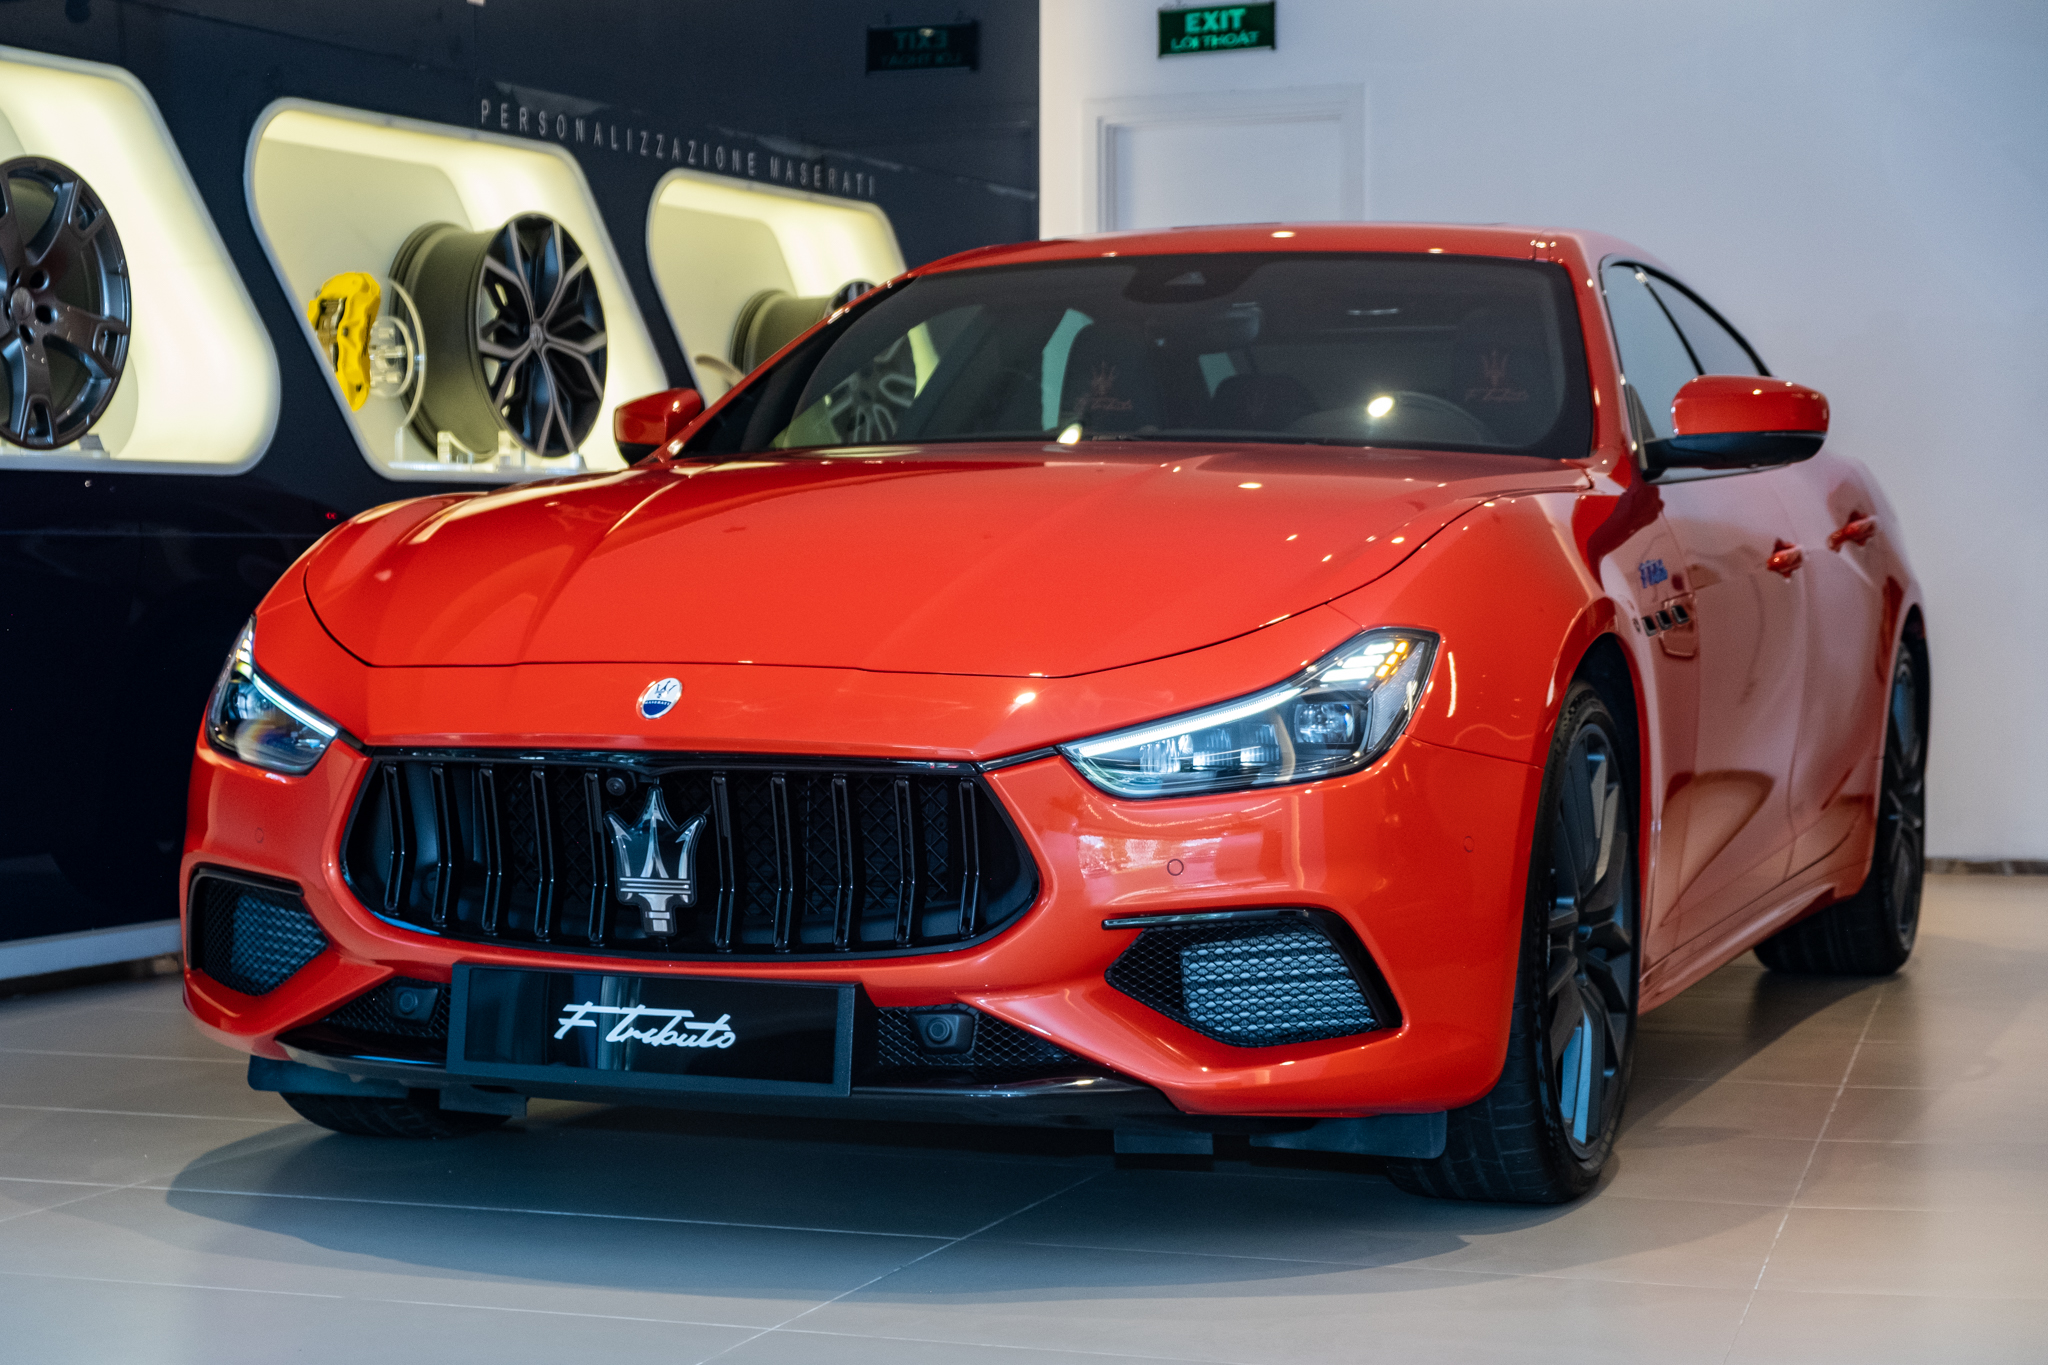 Maserati Ghibli F Tributo độc nhất Việt Nam giá hơn 9 tỷ đồng: Màu sơn độc quyền, máy V6 mạnh 430 mã lực - Ảnh 1.